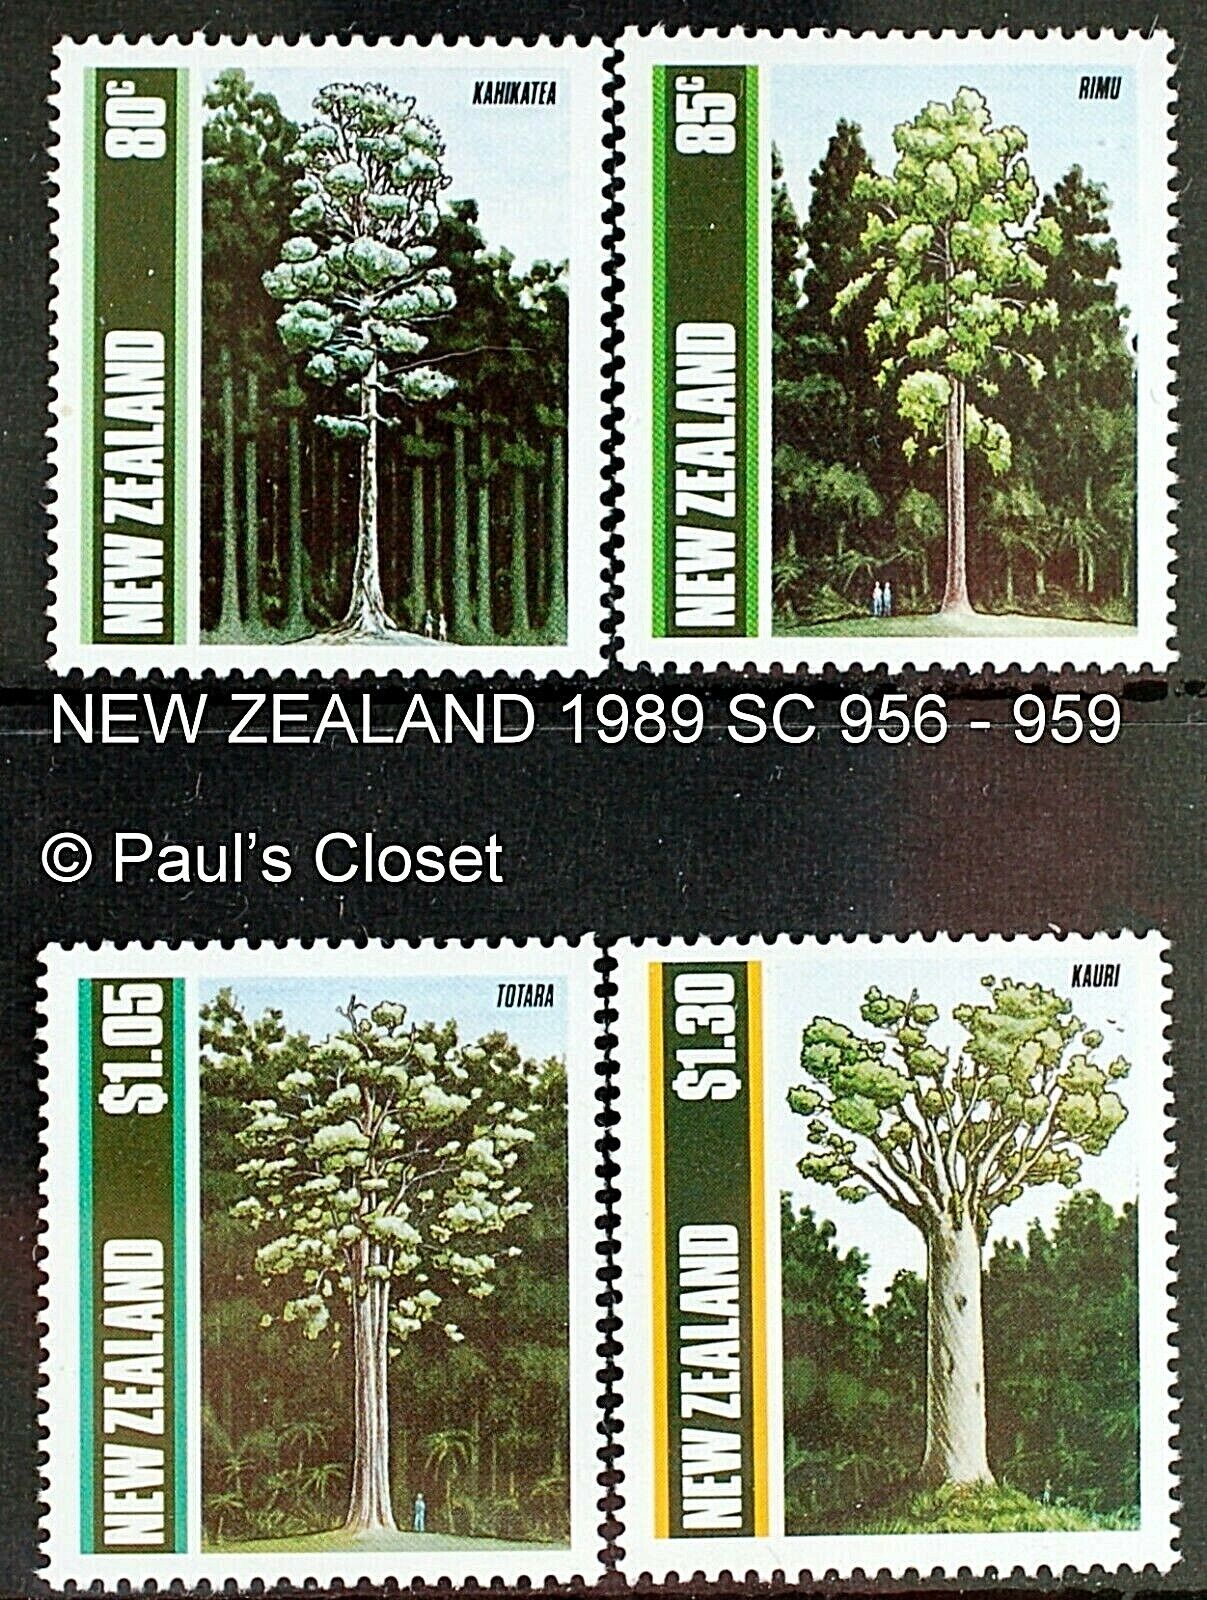 NEW ZEALAND TREES SET OF 4~1989 SC 956 - 959 80¢, 85¢, $1.05 & $1.30 MNH OG VF Без бренда